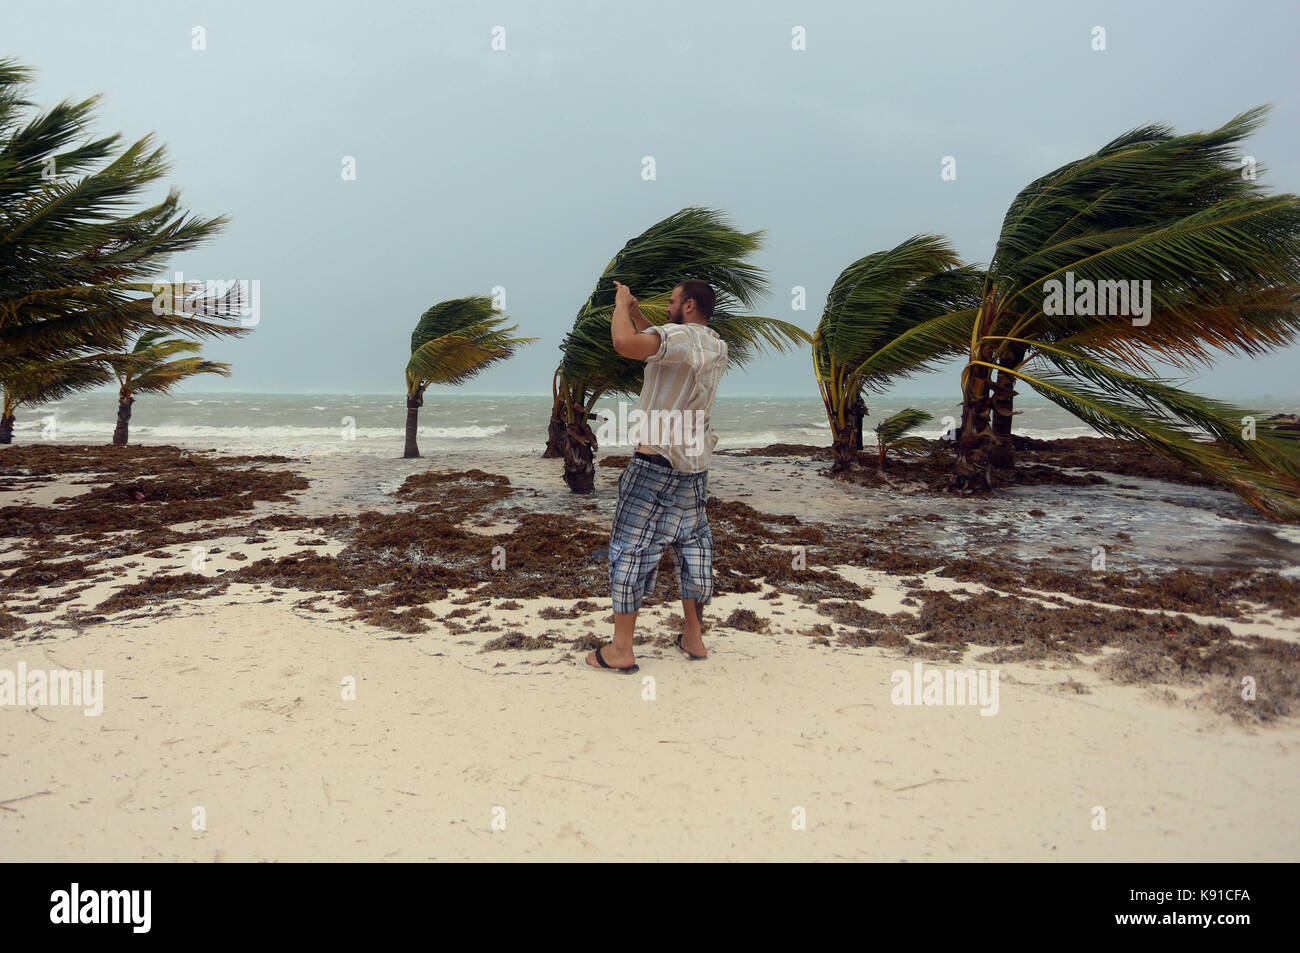 Punta Cana, República Dominicana. 21 sep, 2017. imagen tomada en sept. 20,  2017 muestra un turista tomar fotografías durante el paso del huracán maria  en Punta Cana, República Dominicana. Roosevelt Skerrit, Primer